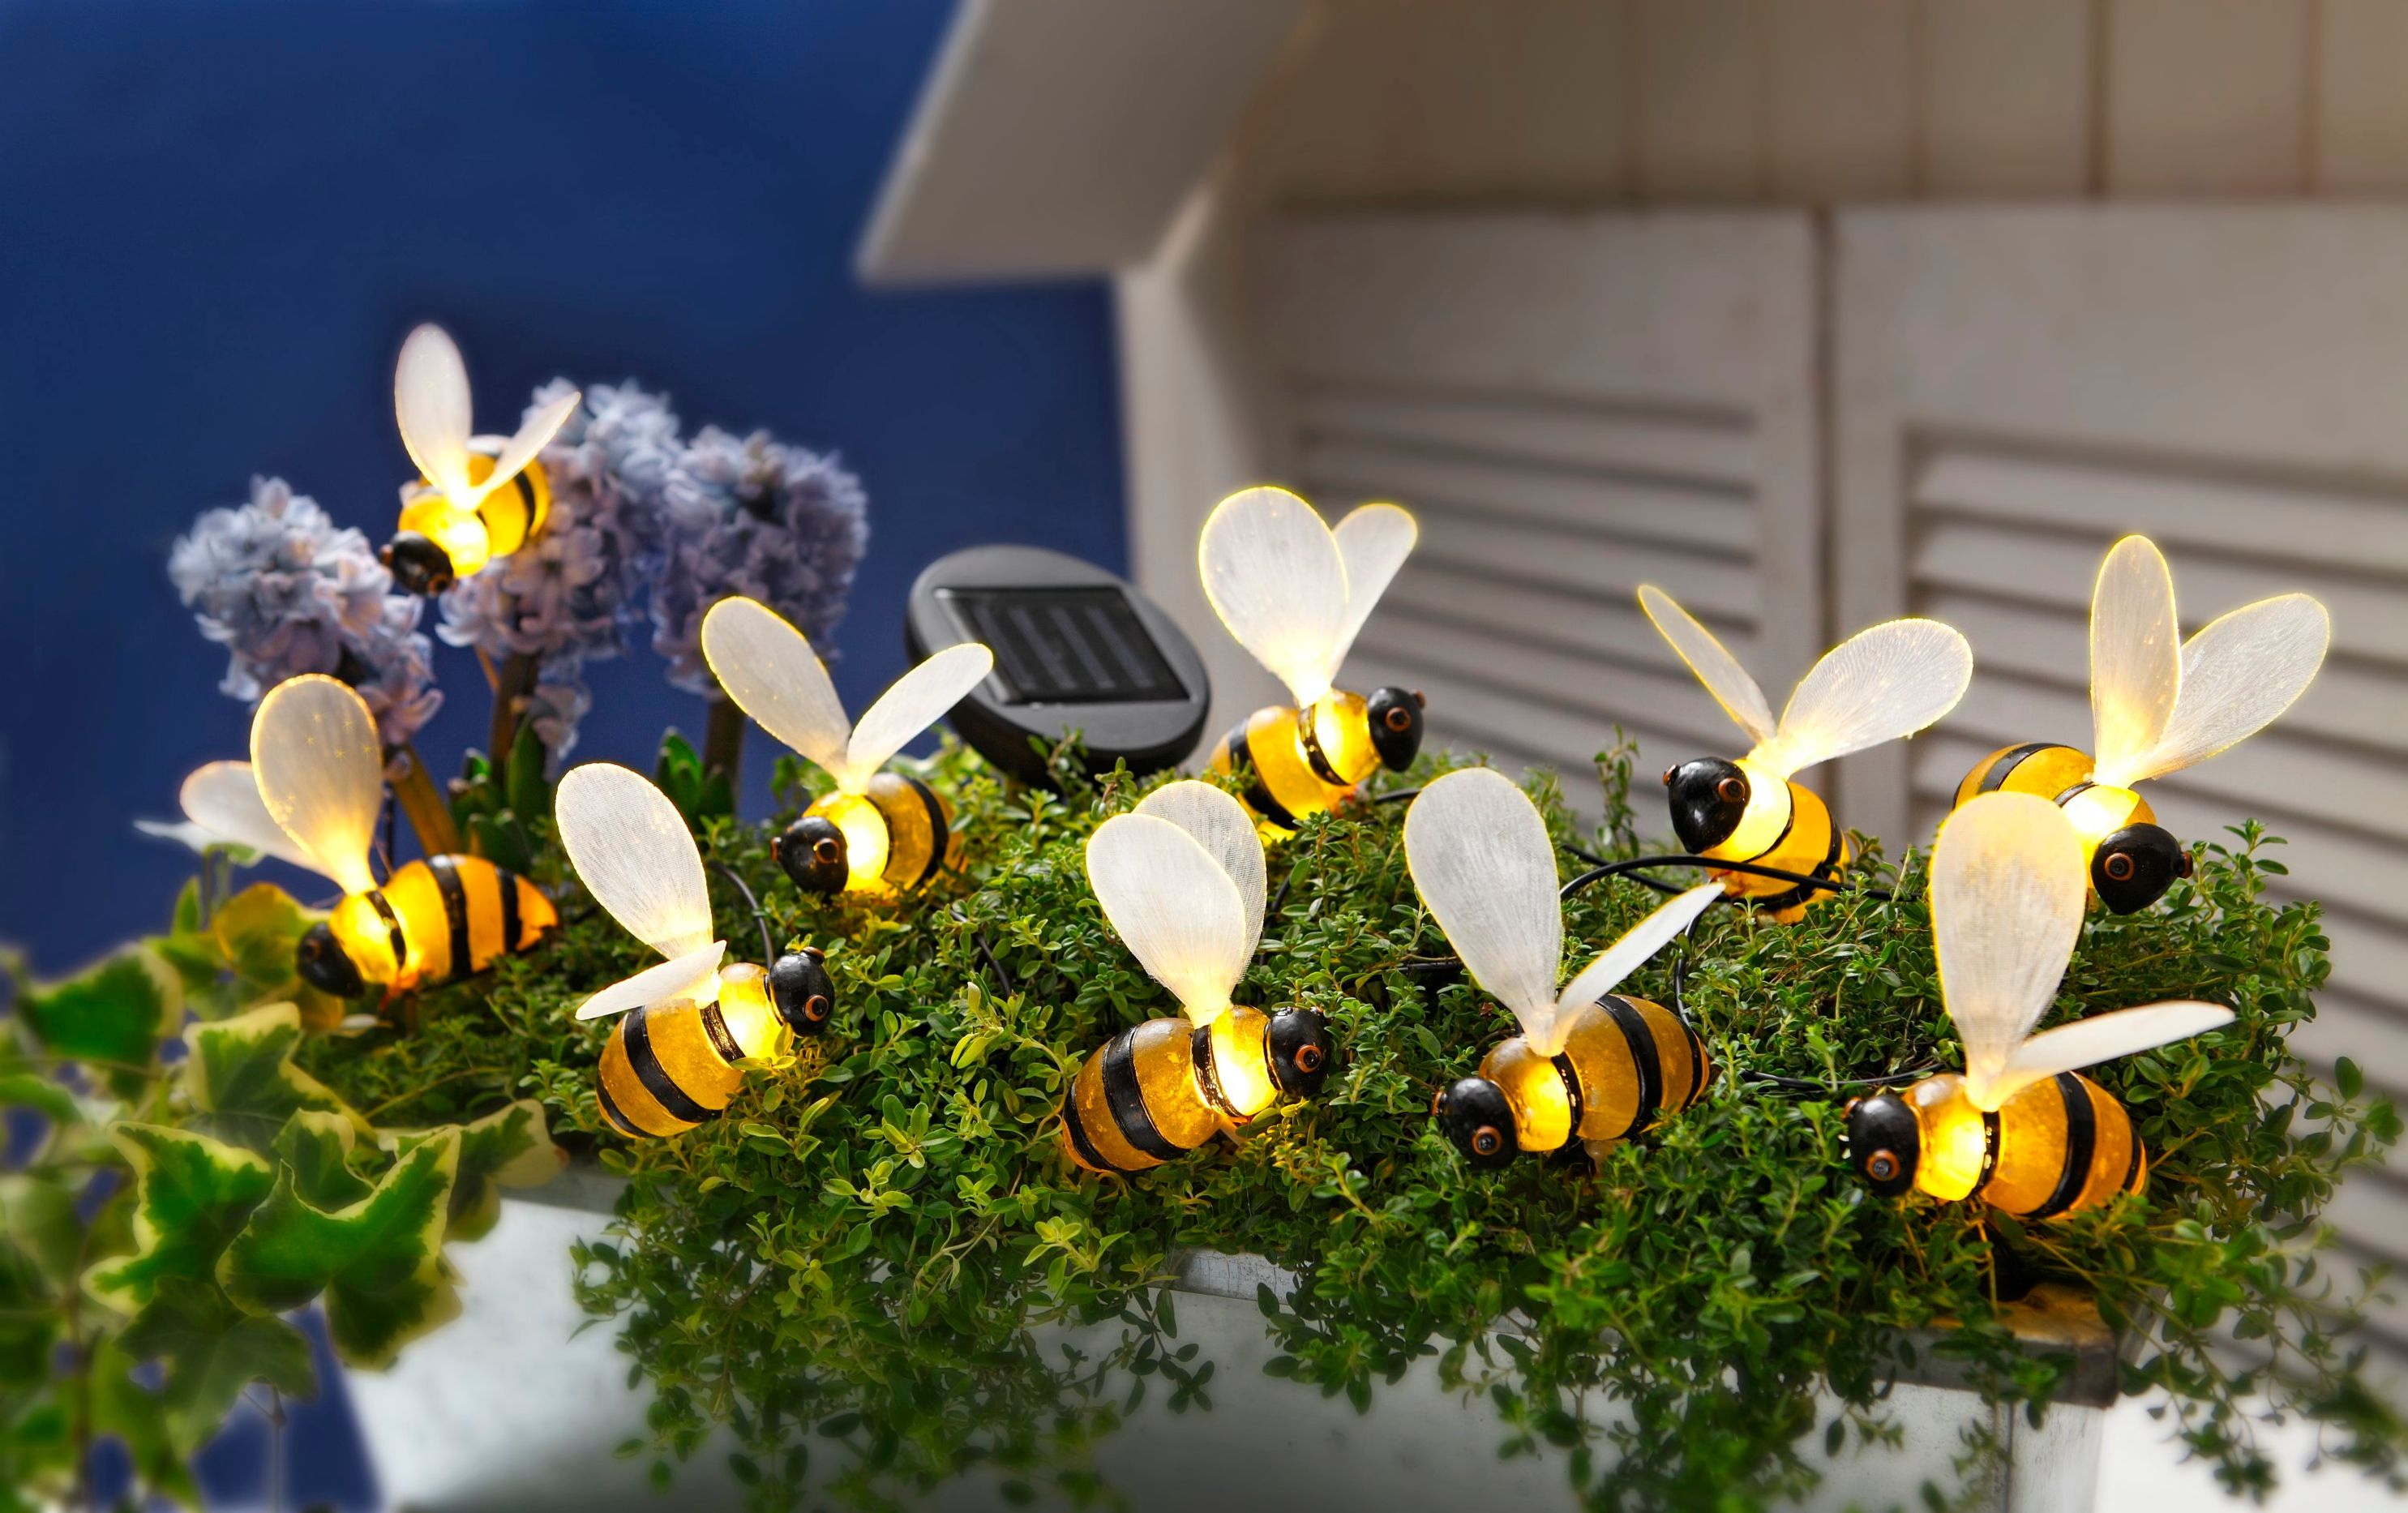 Solar-Lichterkette Bienchen jetzt bei Weltbild.de bestellen